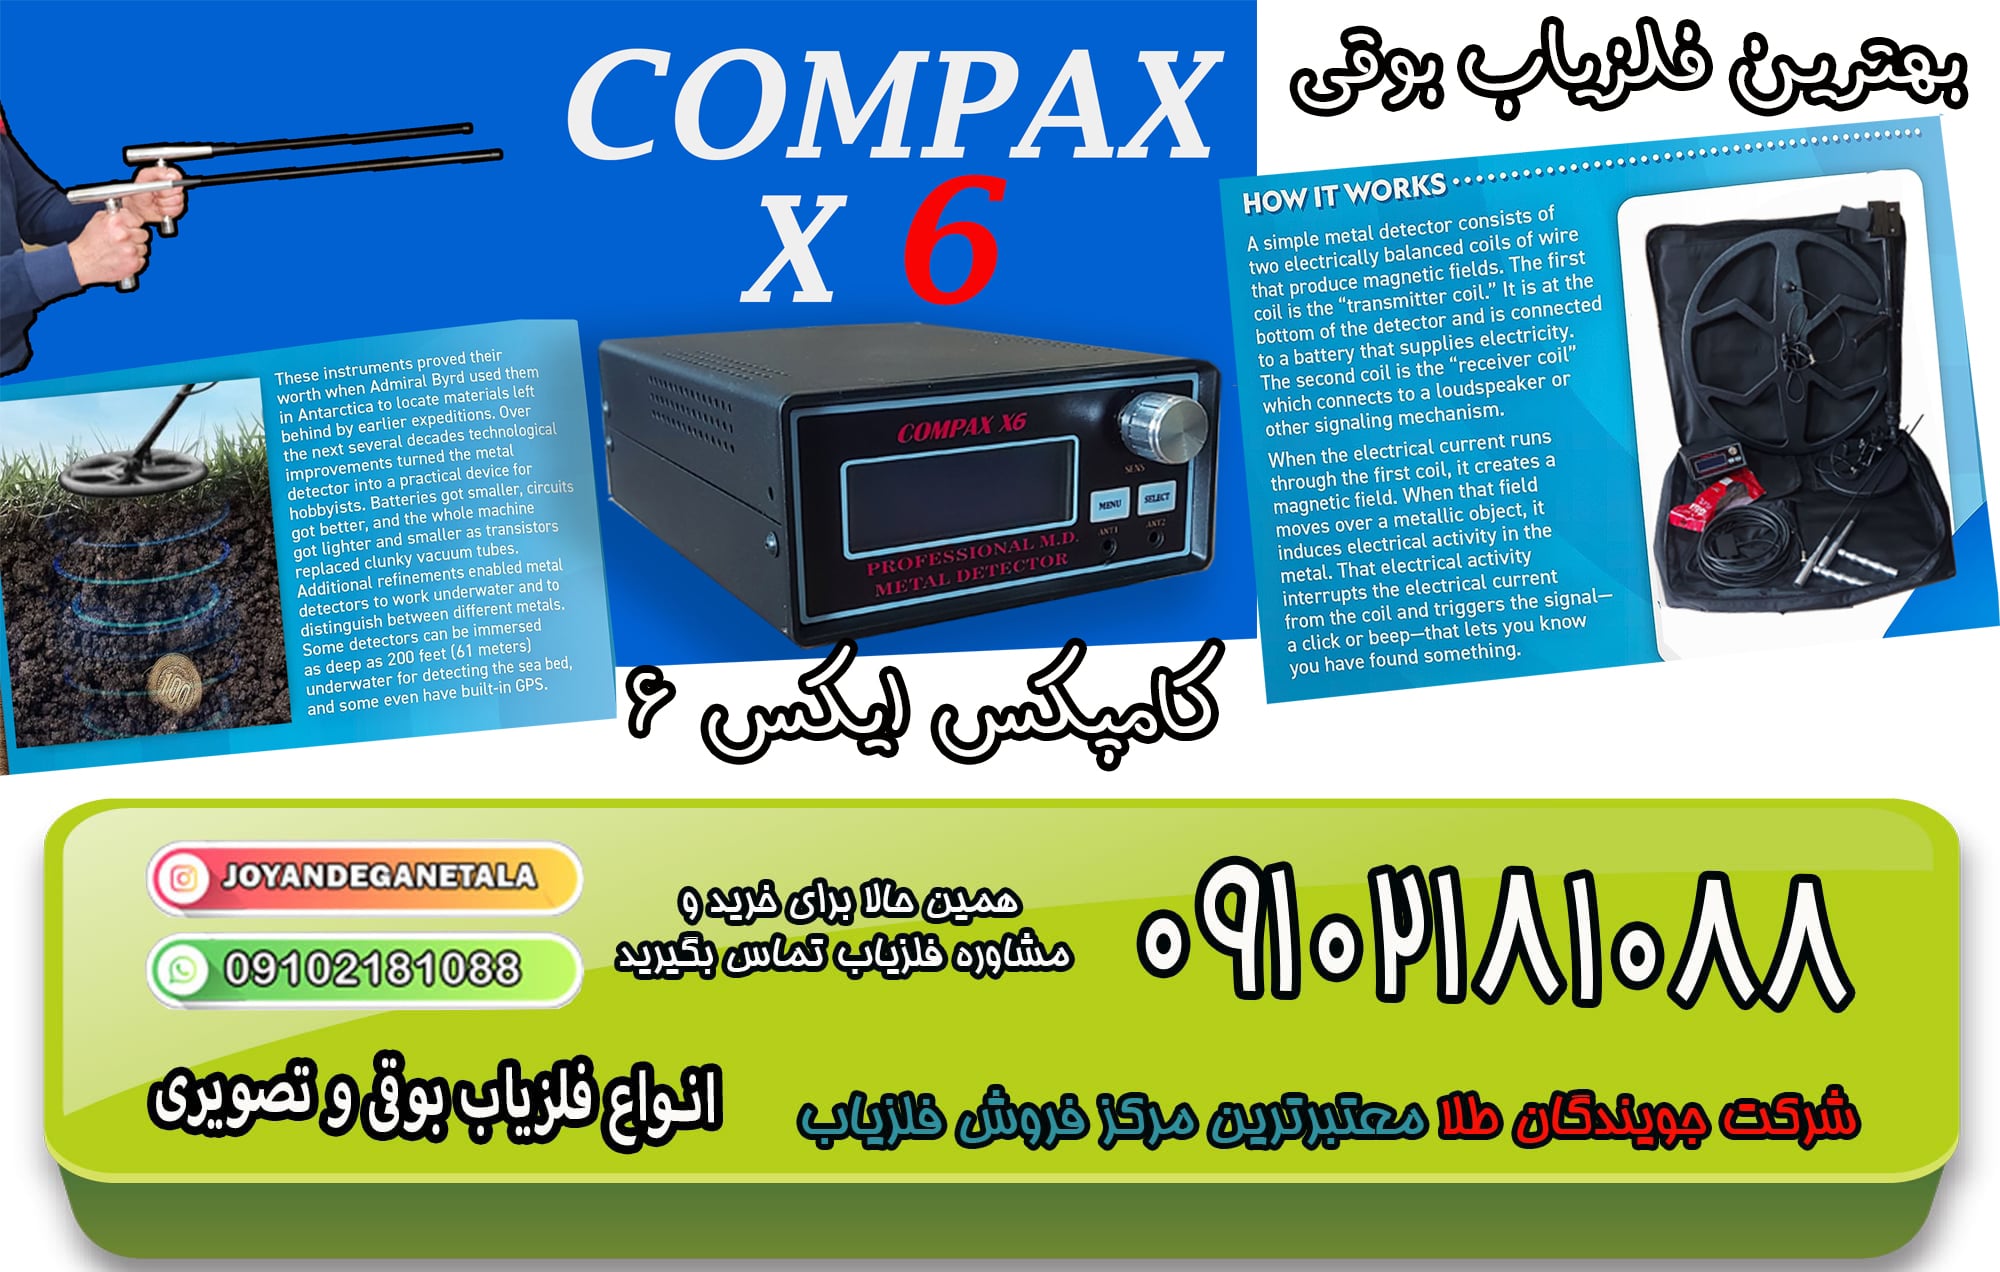 فلزیاب COMPAX X6